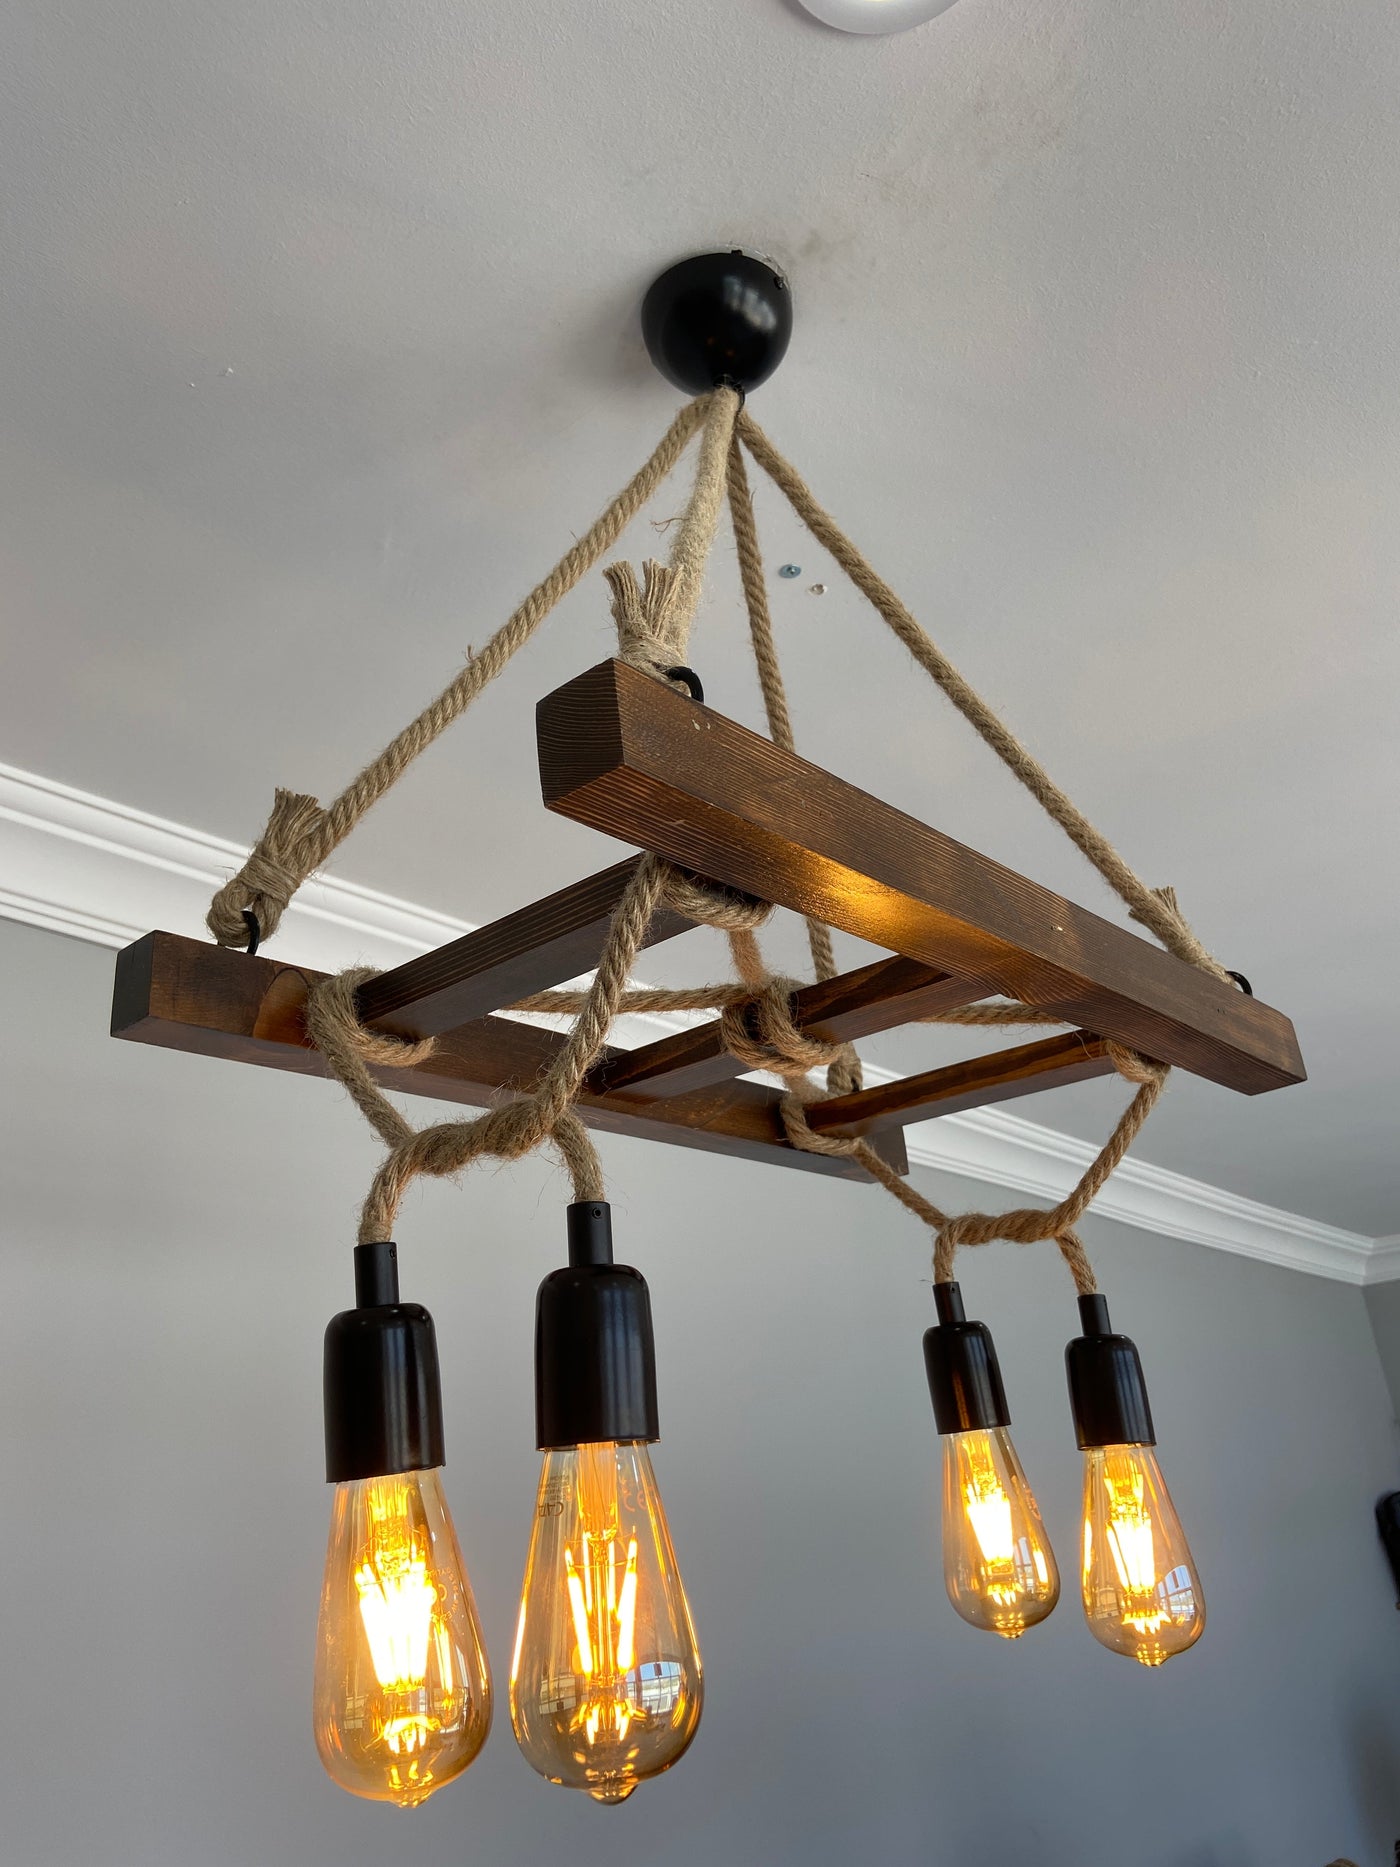 HT118 | Industriële houten ladder hanglamp, 60x80cm, 4 lampen